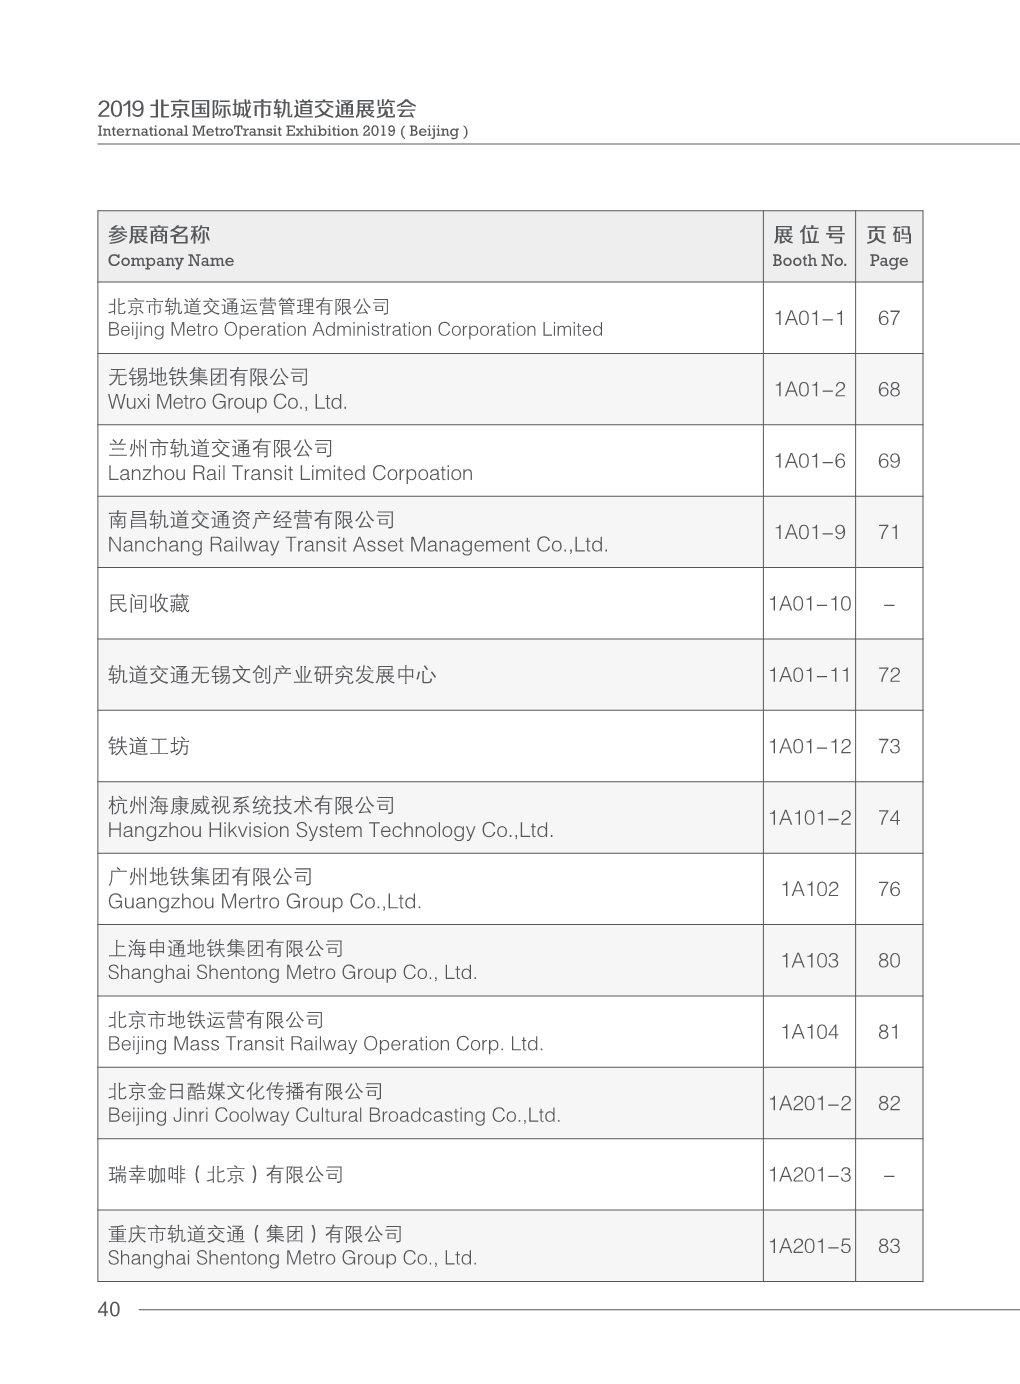 40 2019 北京国际城市轨道交通展览会参展商名称展位号页码1a01-1 67